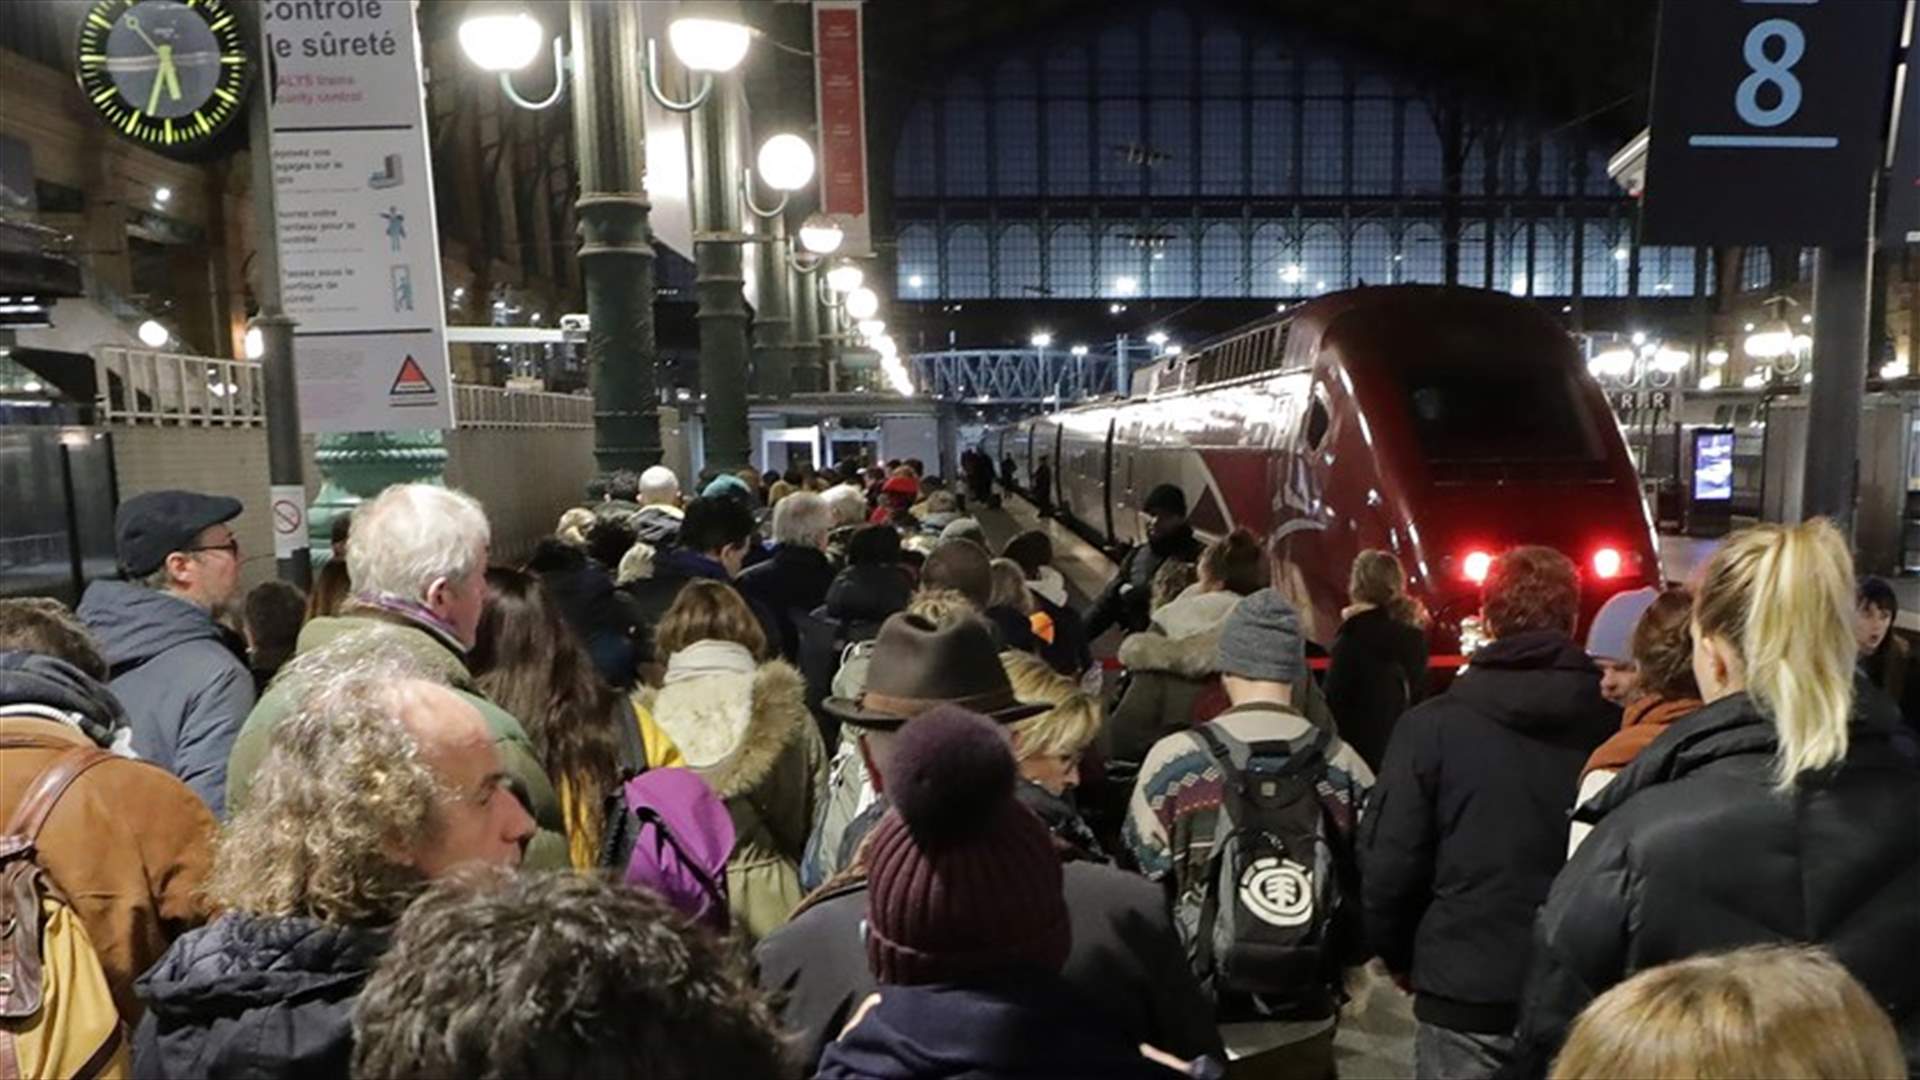 الإضراب الإحتجاجي في فرنسا مستمر... وقلق من احتمال توقف القطارات في عطل عيد الميلاد